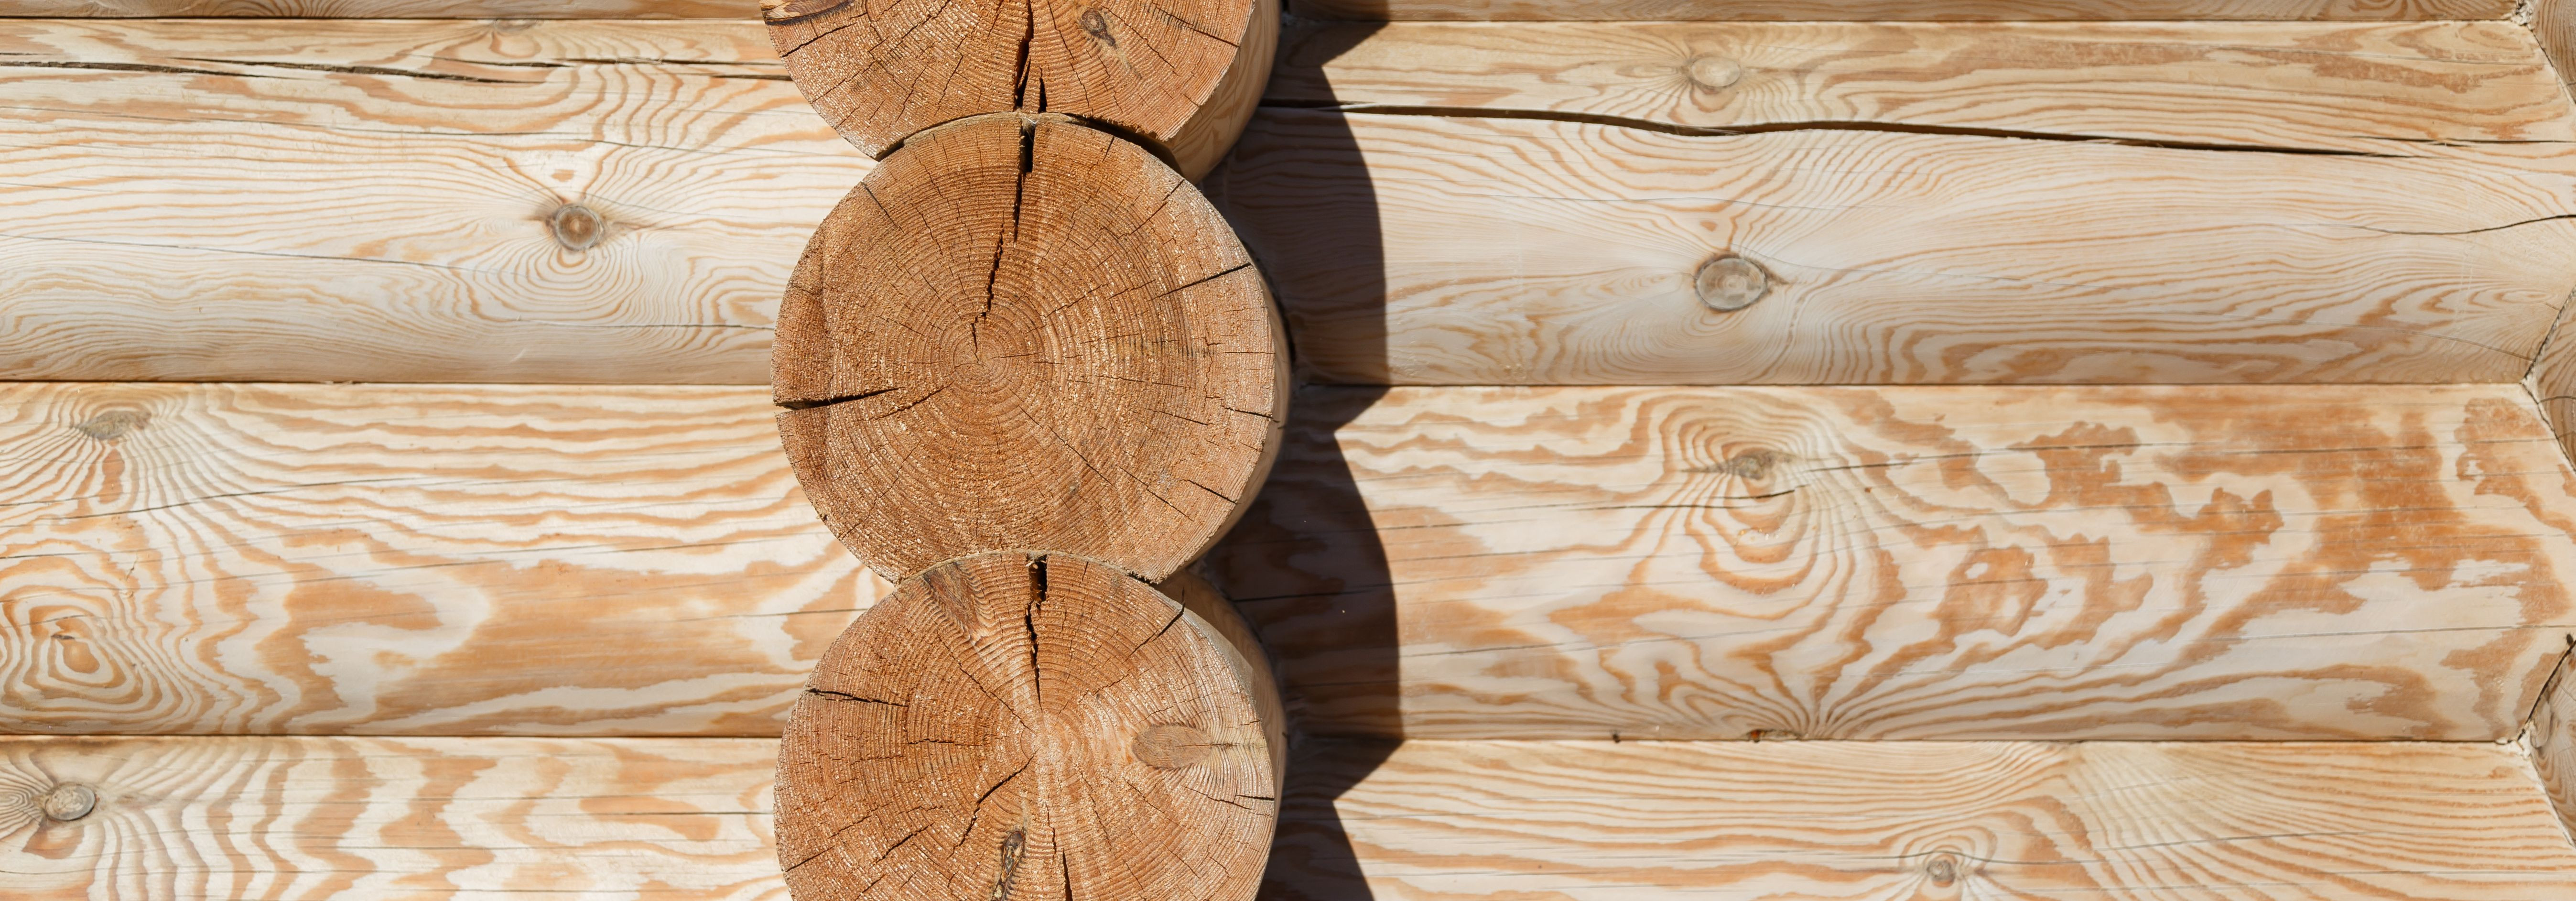 Üle 27 aasta on MERIS OÜ olnud puidu- ja paberitööstuse esirinnas, muutes looduse küllust kodu soojuseks. Meie missioon on lihtne, kuid mõjukas: Oleme spetsiali